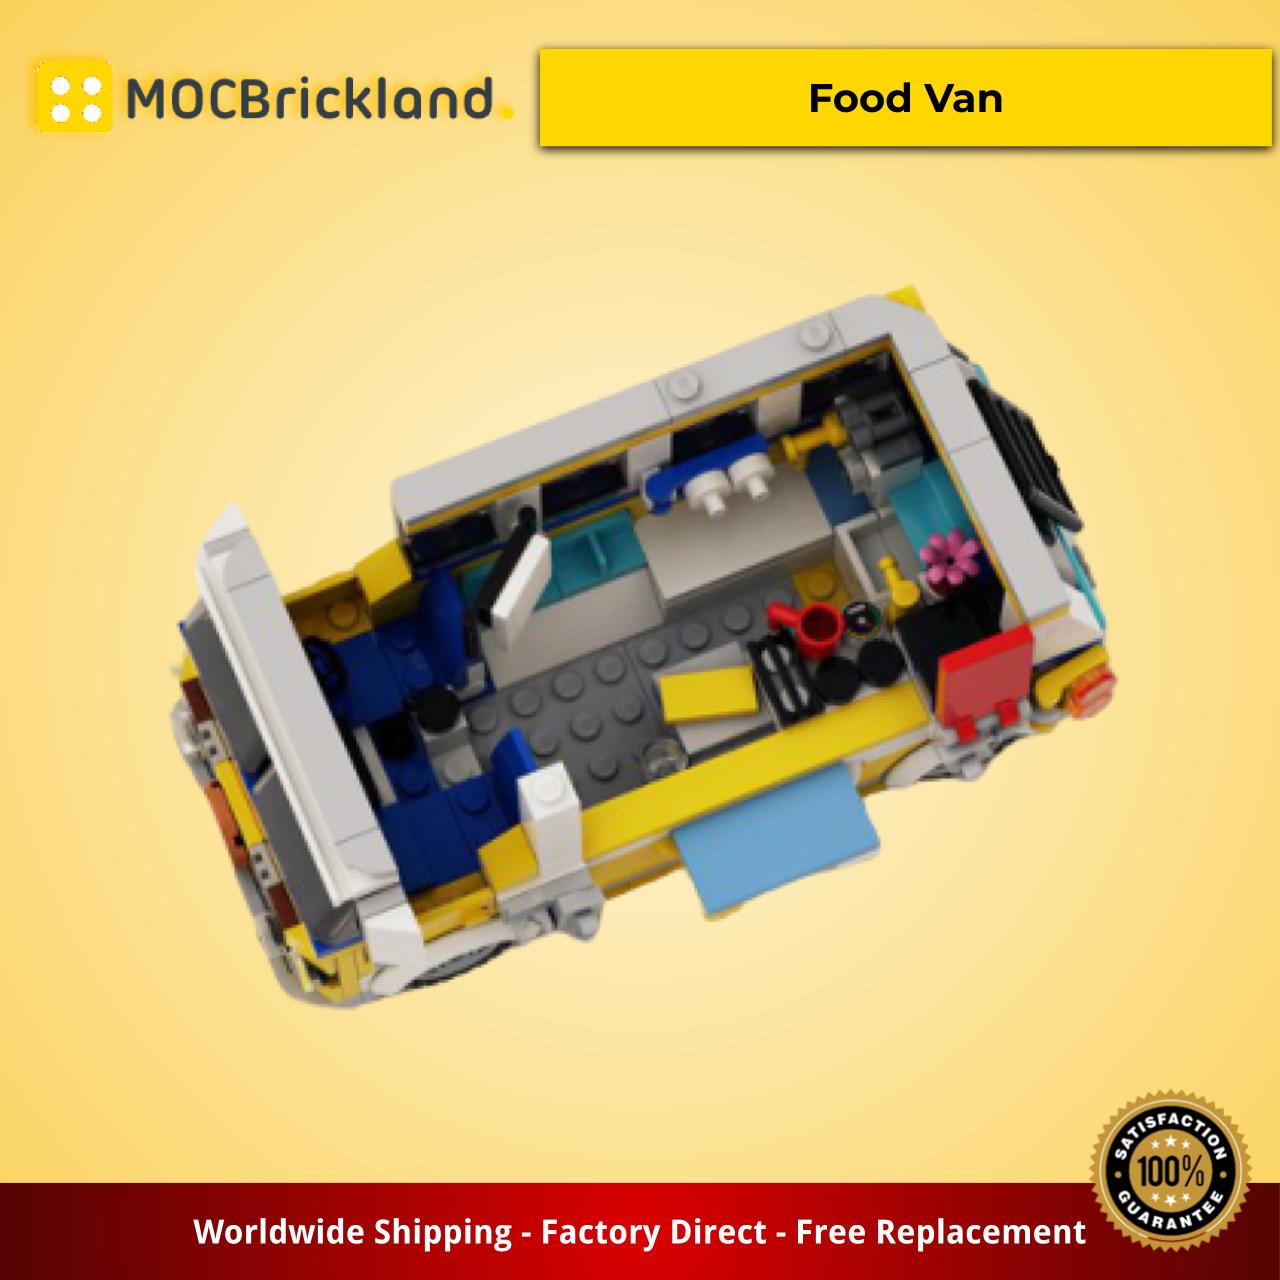 MOCBRICKLAND MOC-16318 Surfer's Food Van